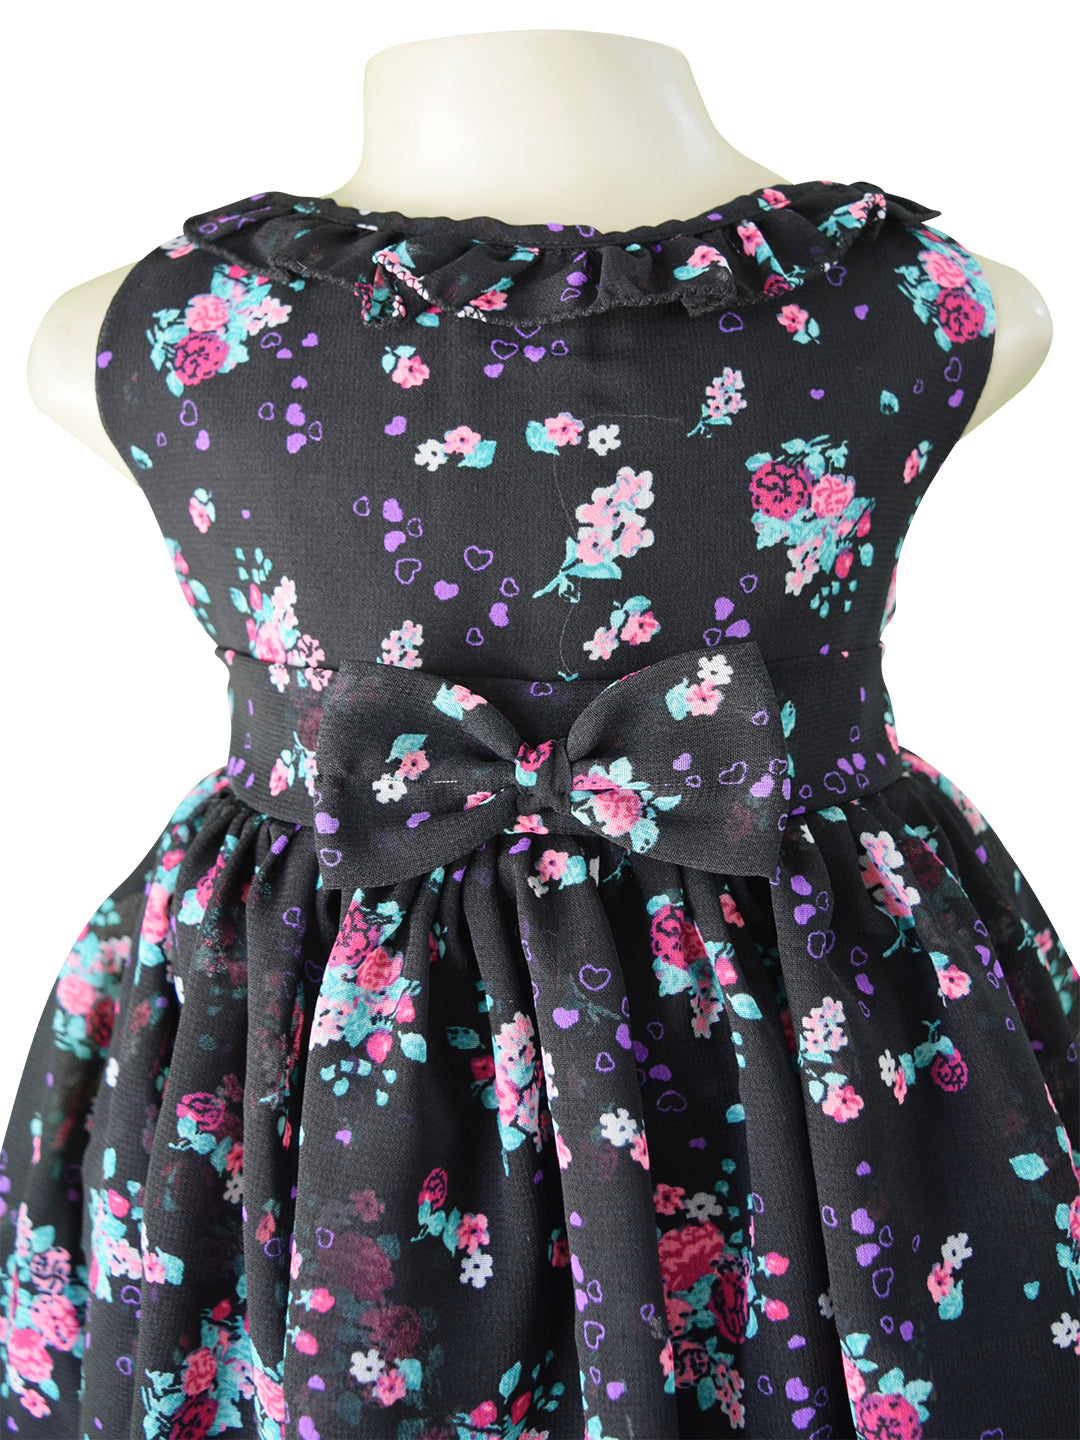 Faye Black Floral Dress